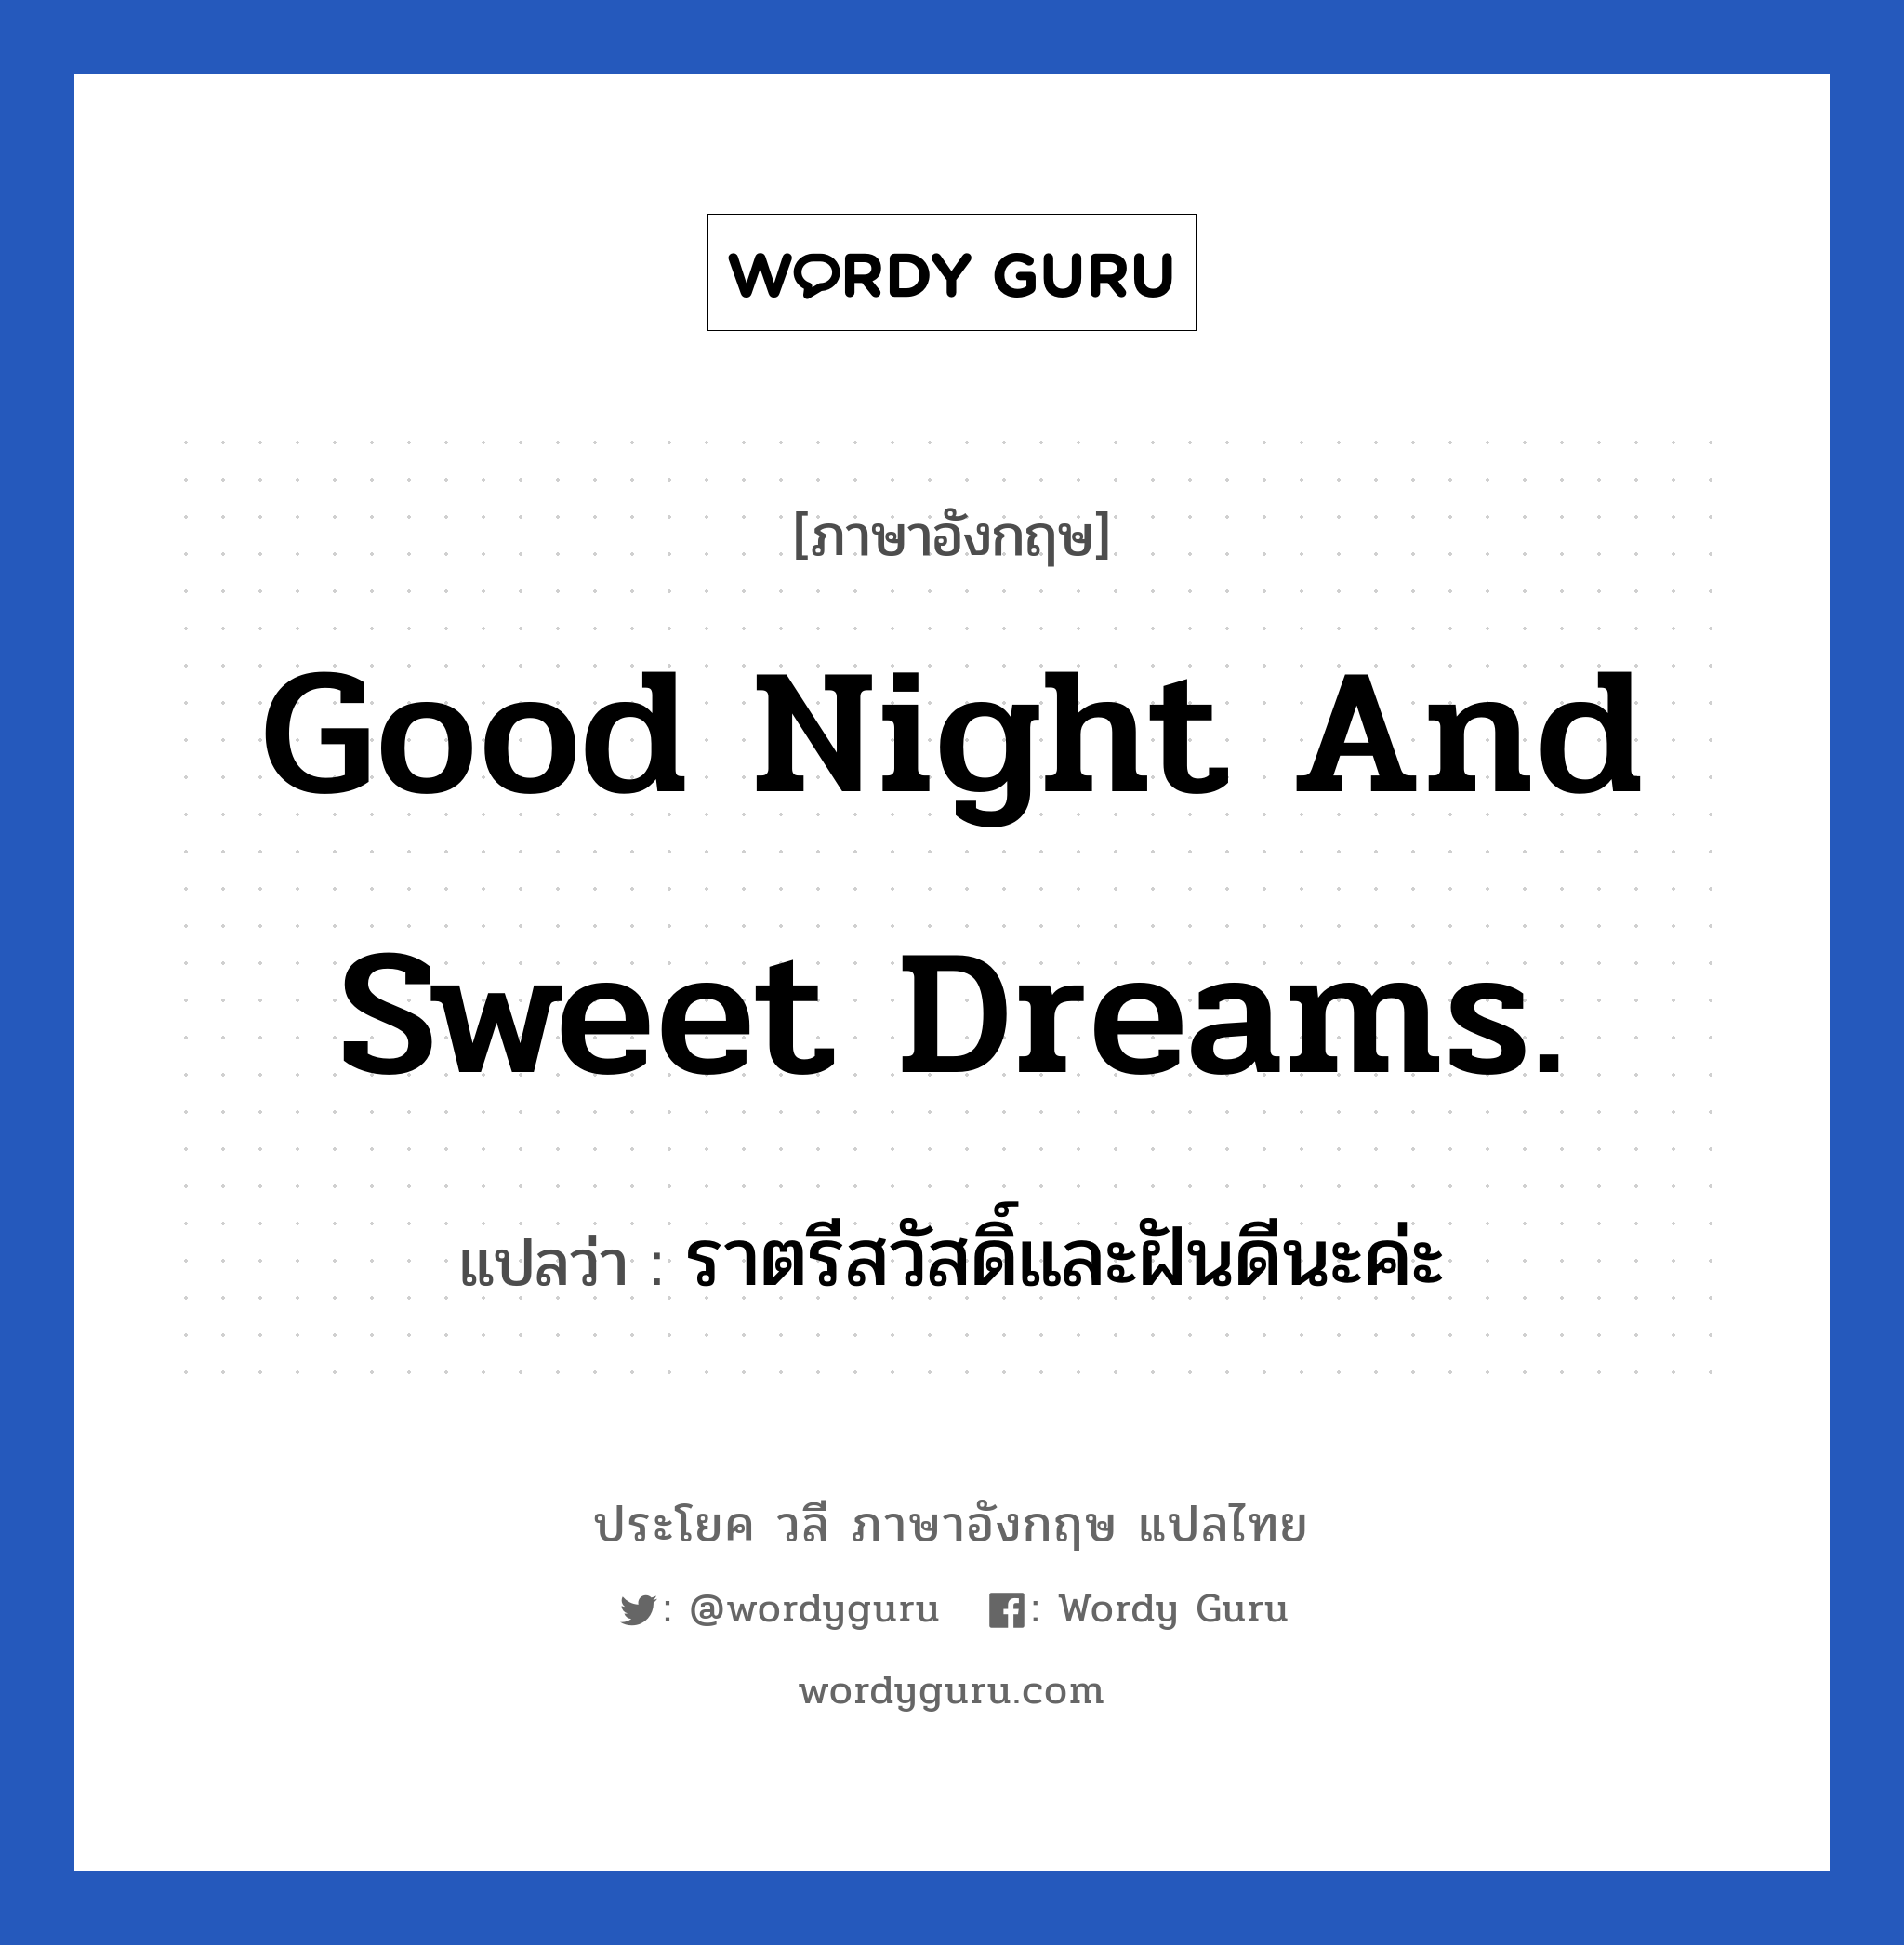 Good night and sweet dreams. แปลว่า?, วลีภาษาอังกฤษ Good night and sweet dreams. แปลว่า ราตรีสวัสดิ์และฝันดีนะค่ะ หมวด ความรัก